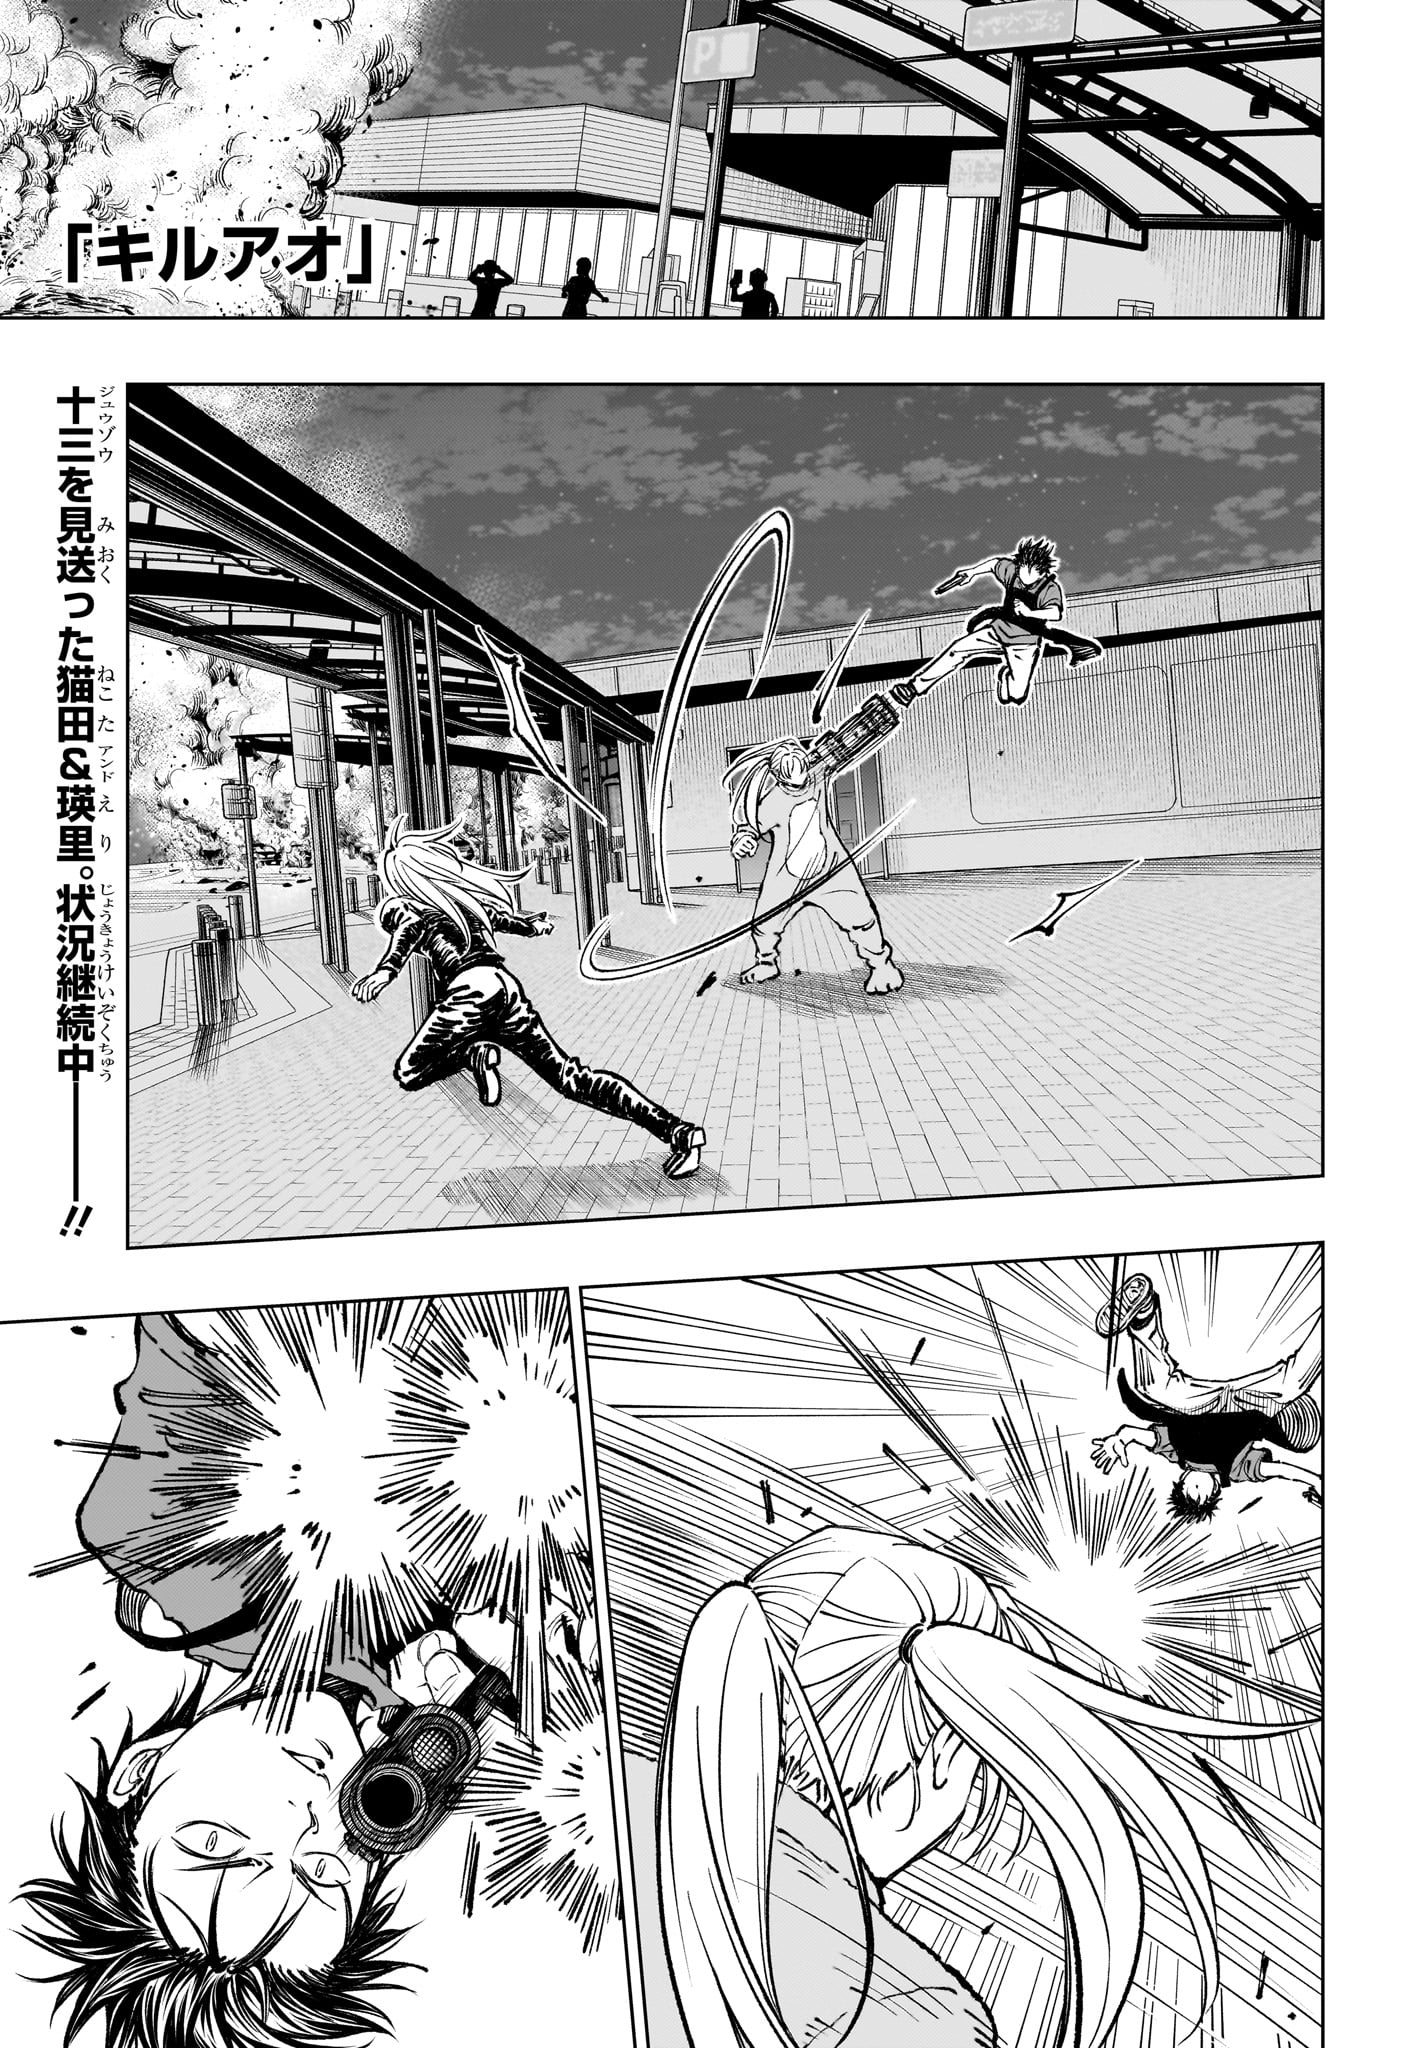 Kill Ao - Chapter 50 - Page 1